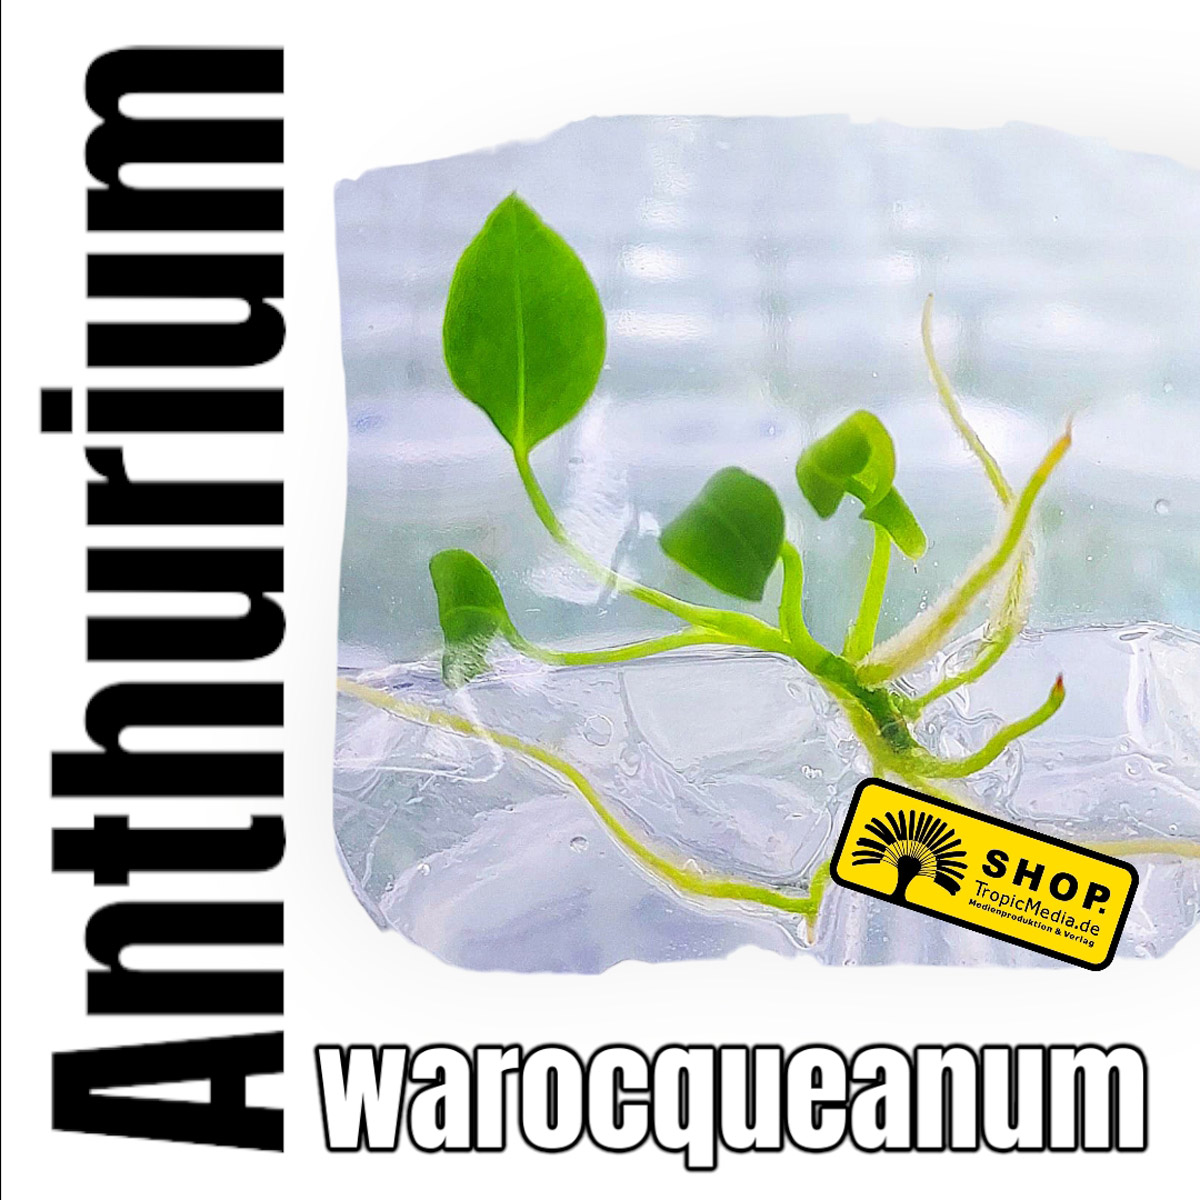 Anthurium warocqueanum Tissue Culture (TC)